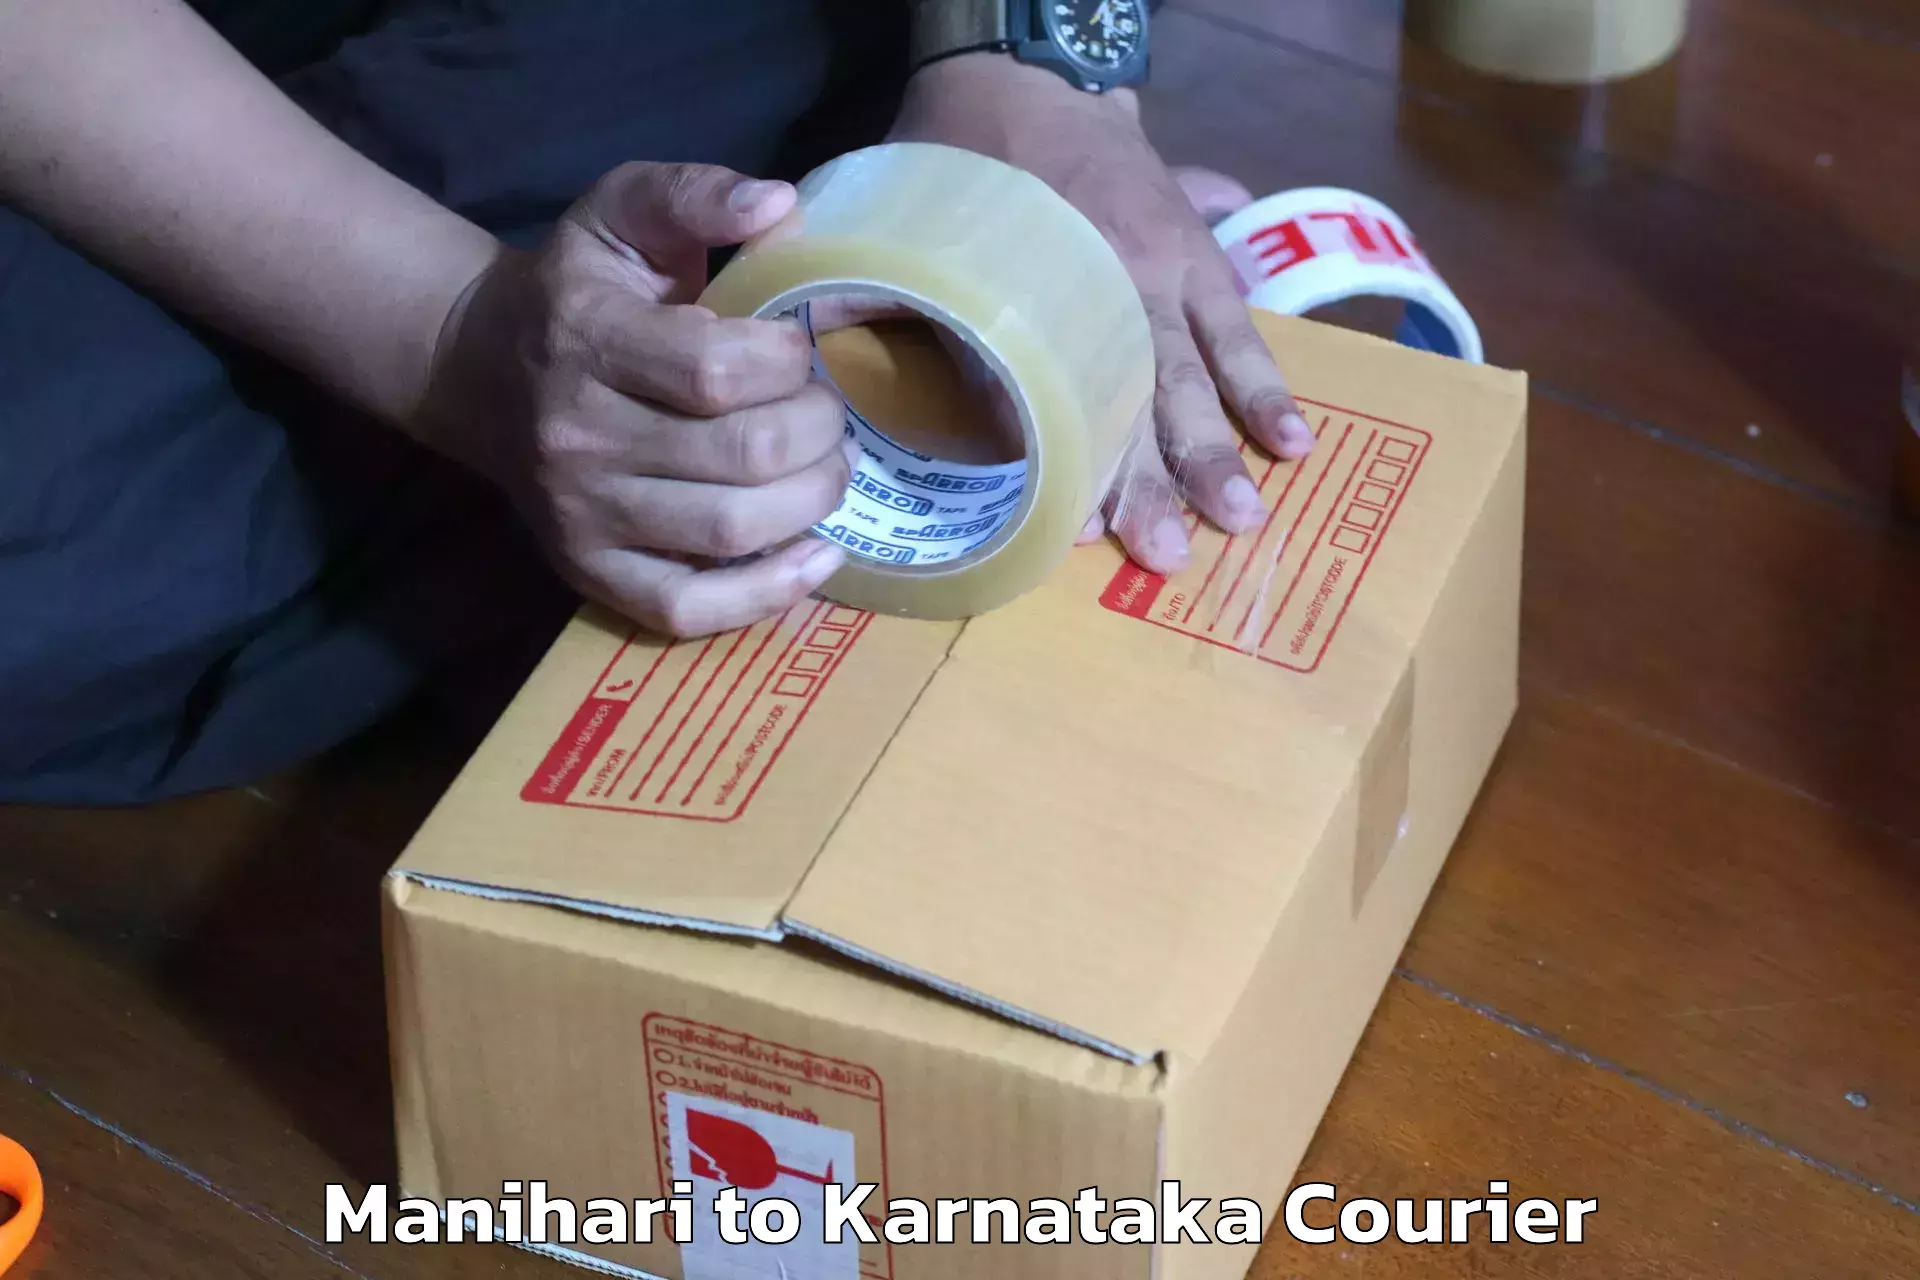 Household goods transport service Manihari to Karnataka